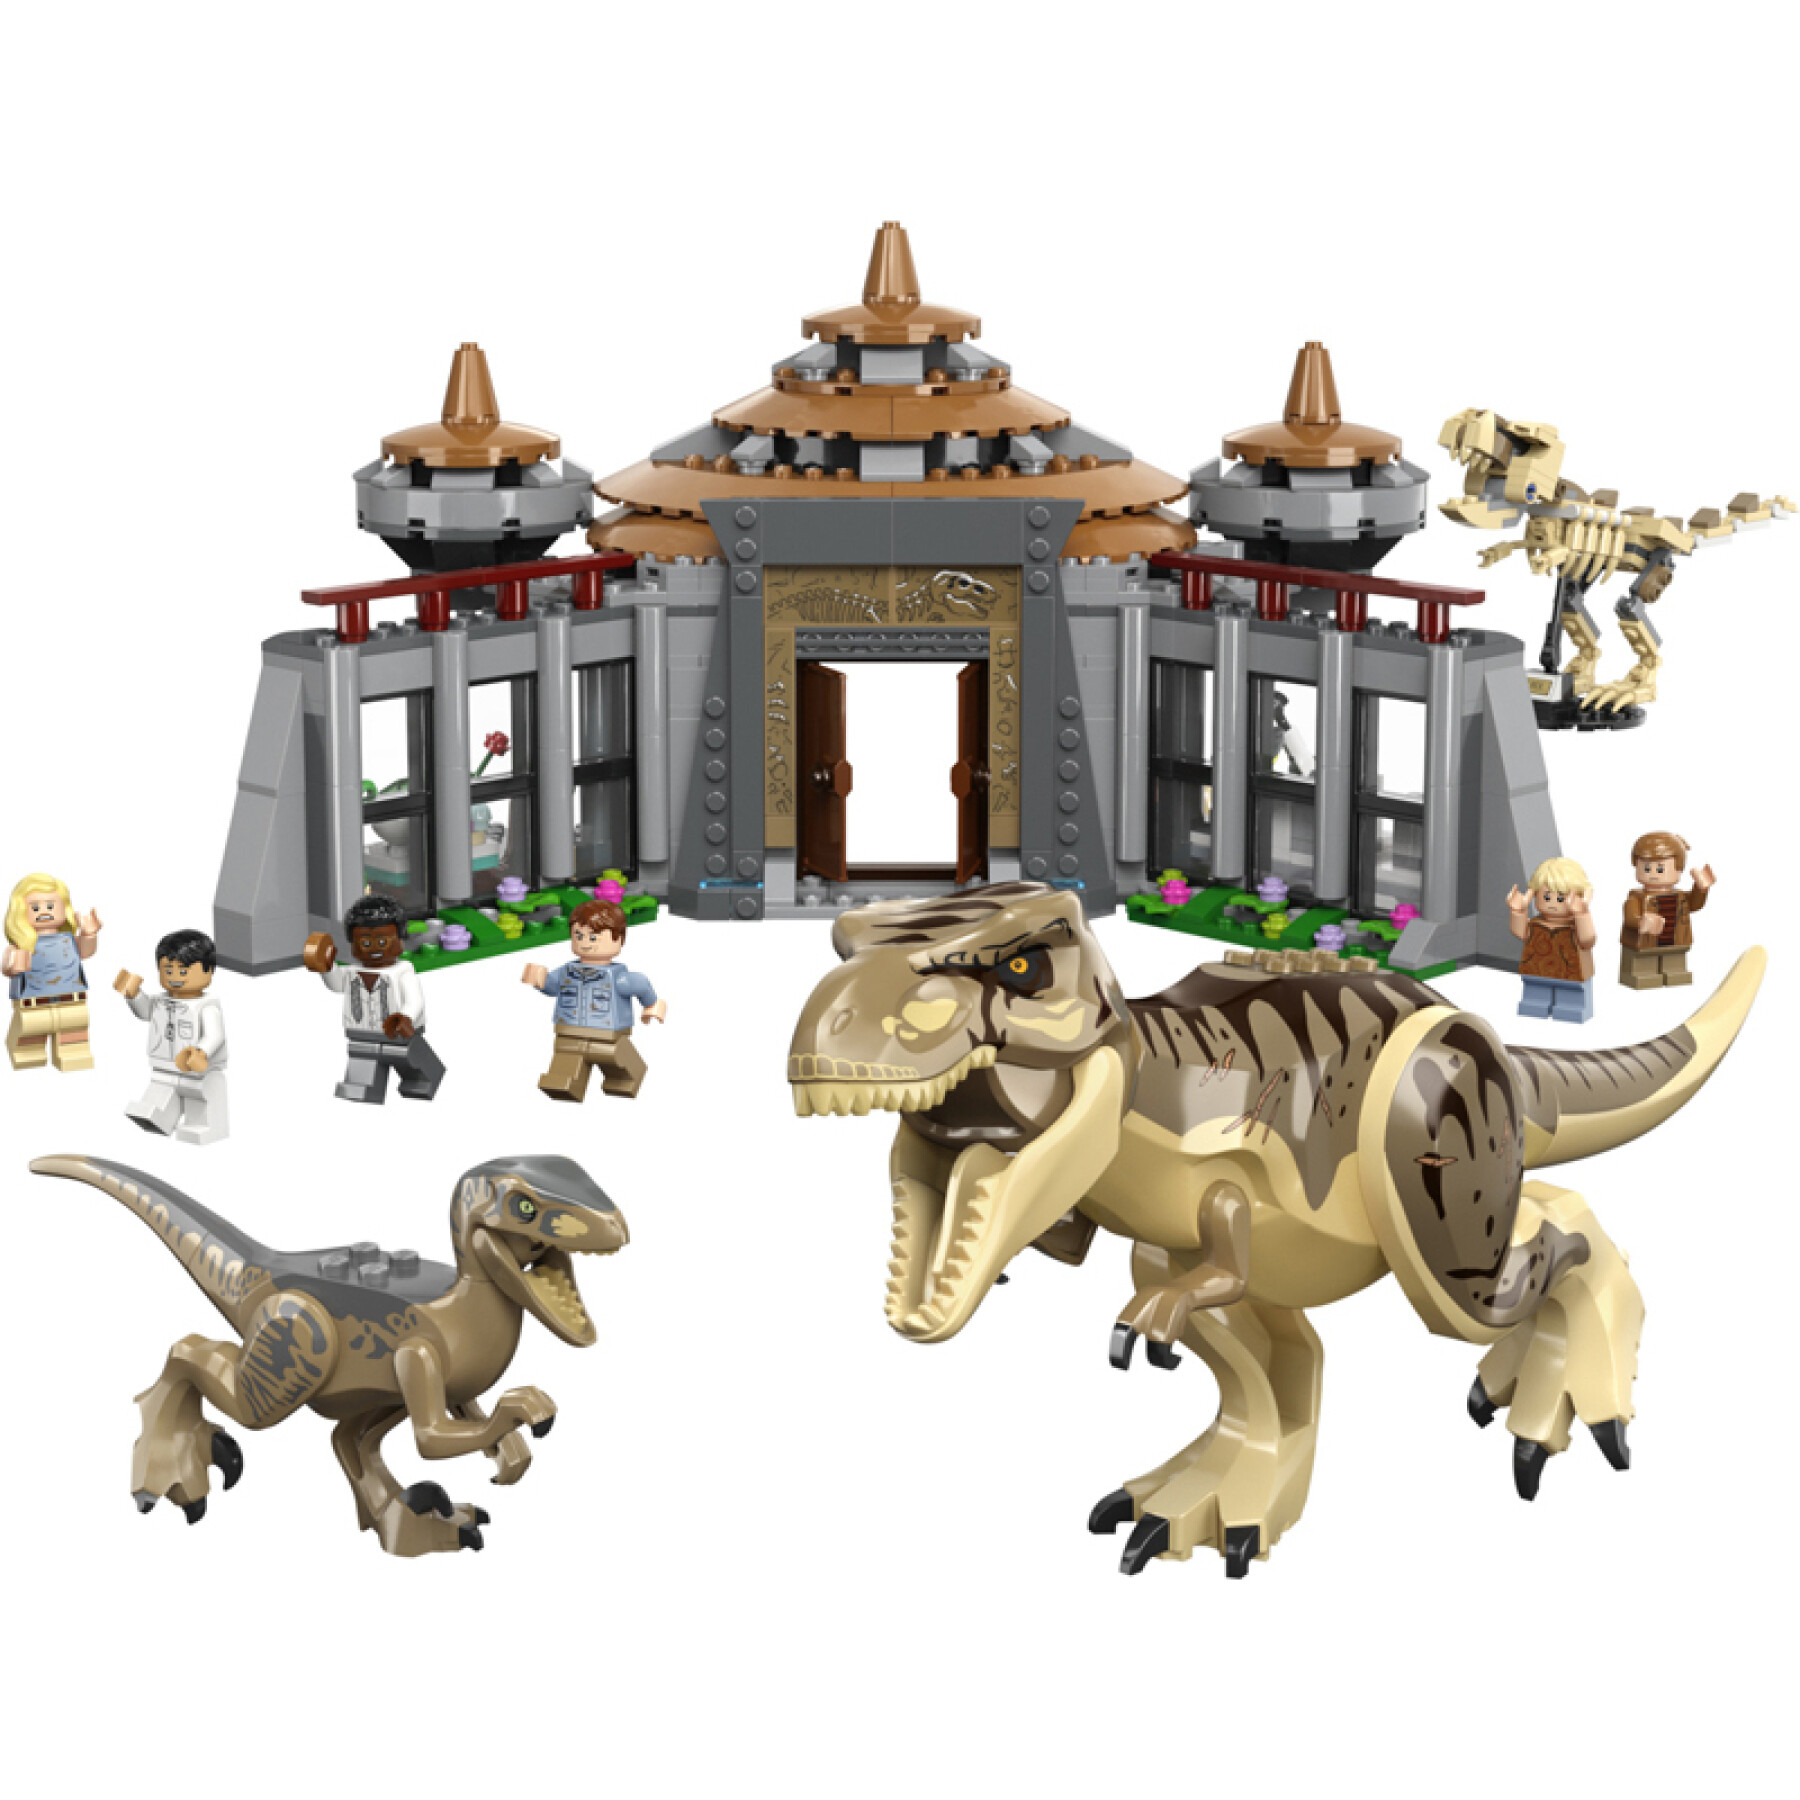 Construção de conjuntos de centro de visitantes Lego Jurassic World